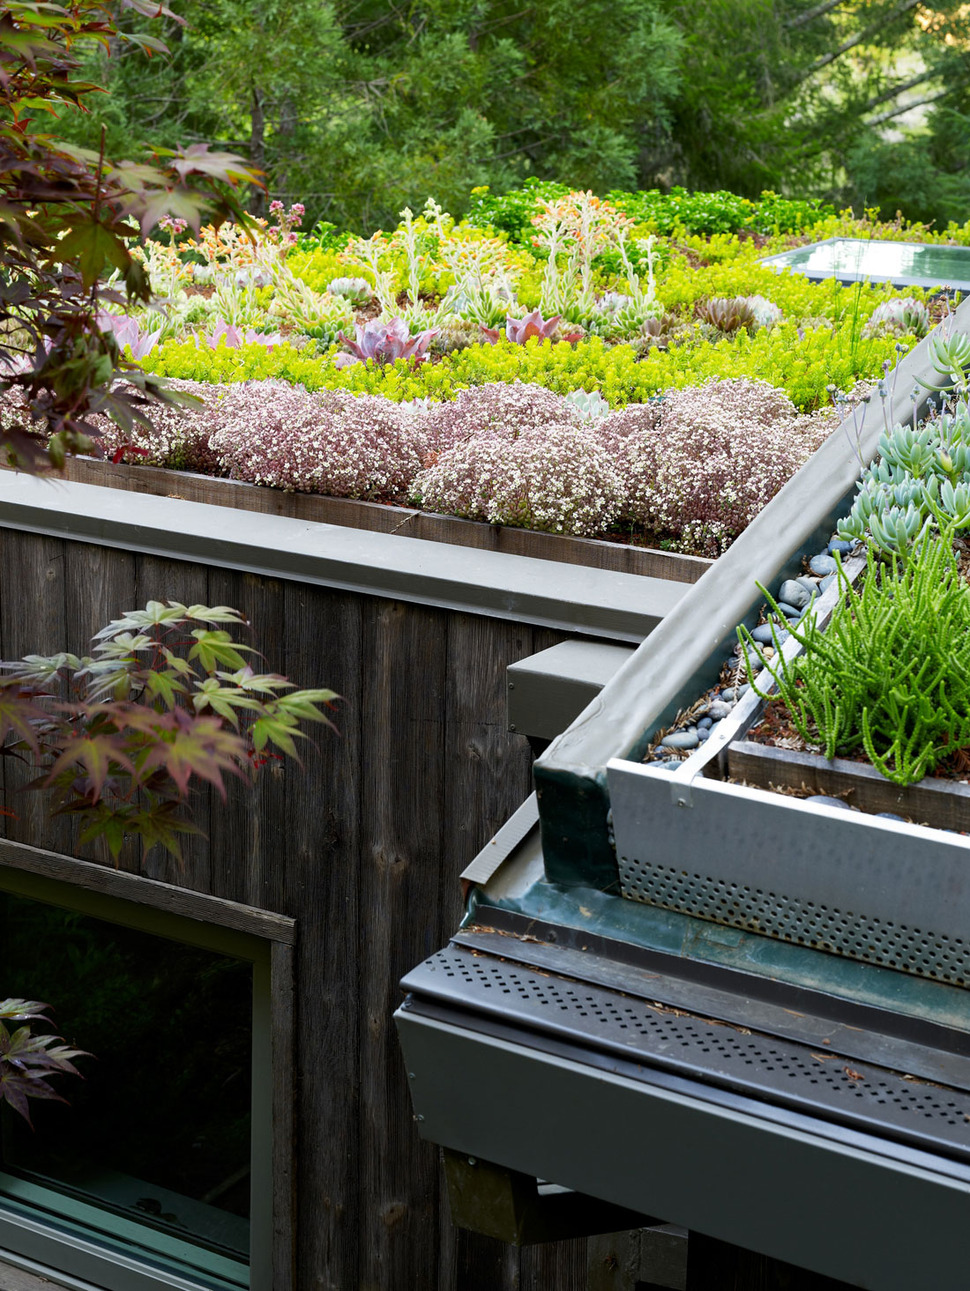 artist-studio-overlooks-guest-cabin-rooftop-garden-7-roof-garden.jpg